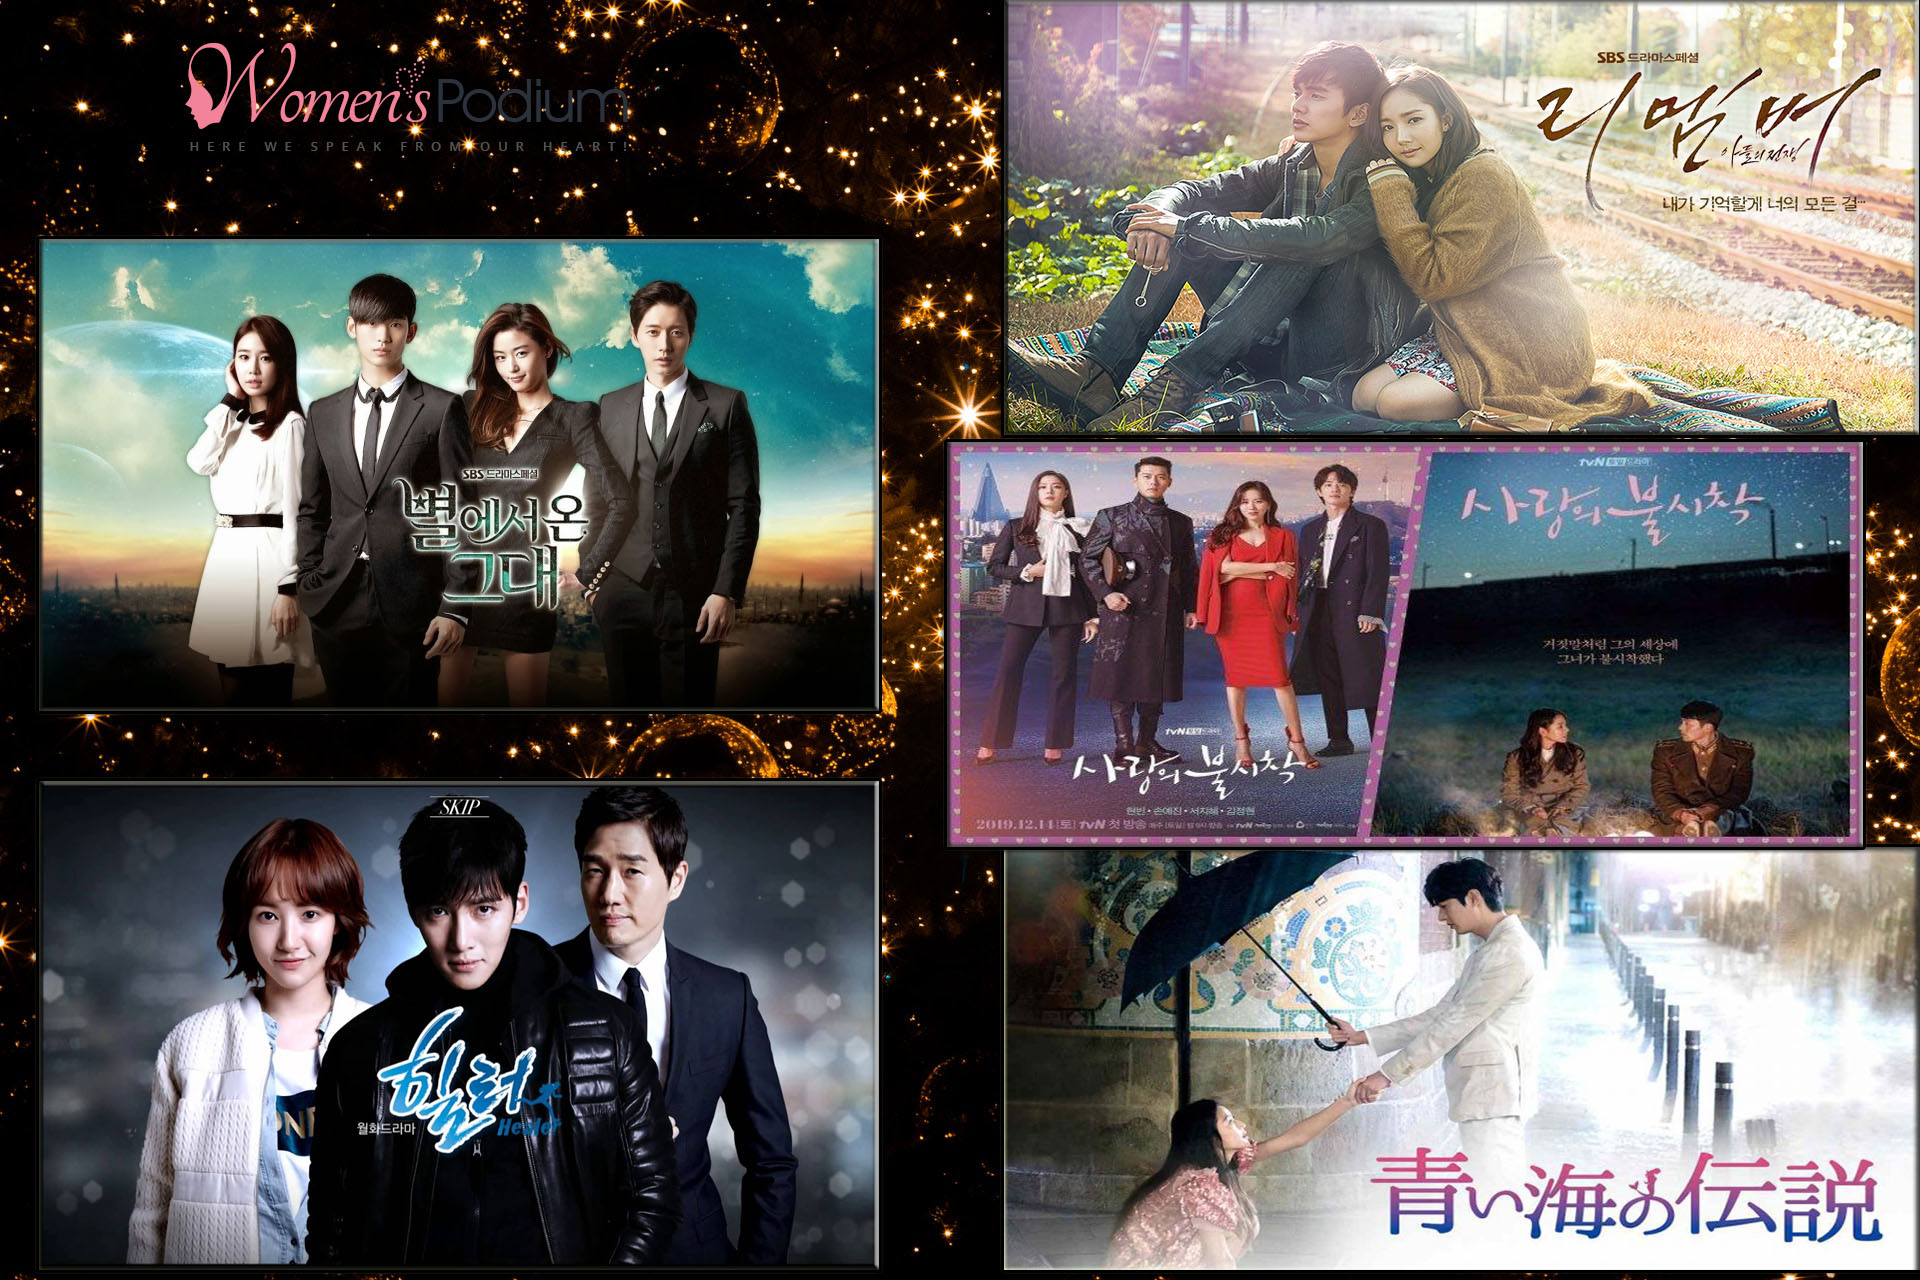 Must Watch Korean Dramas - 5 Best Dramas, You Won't Regret!